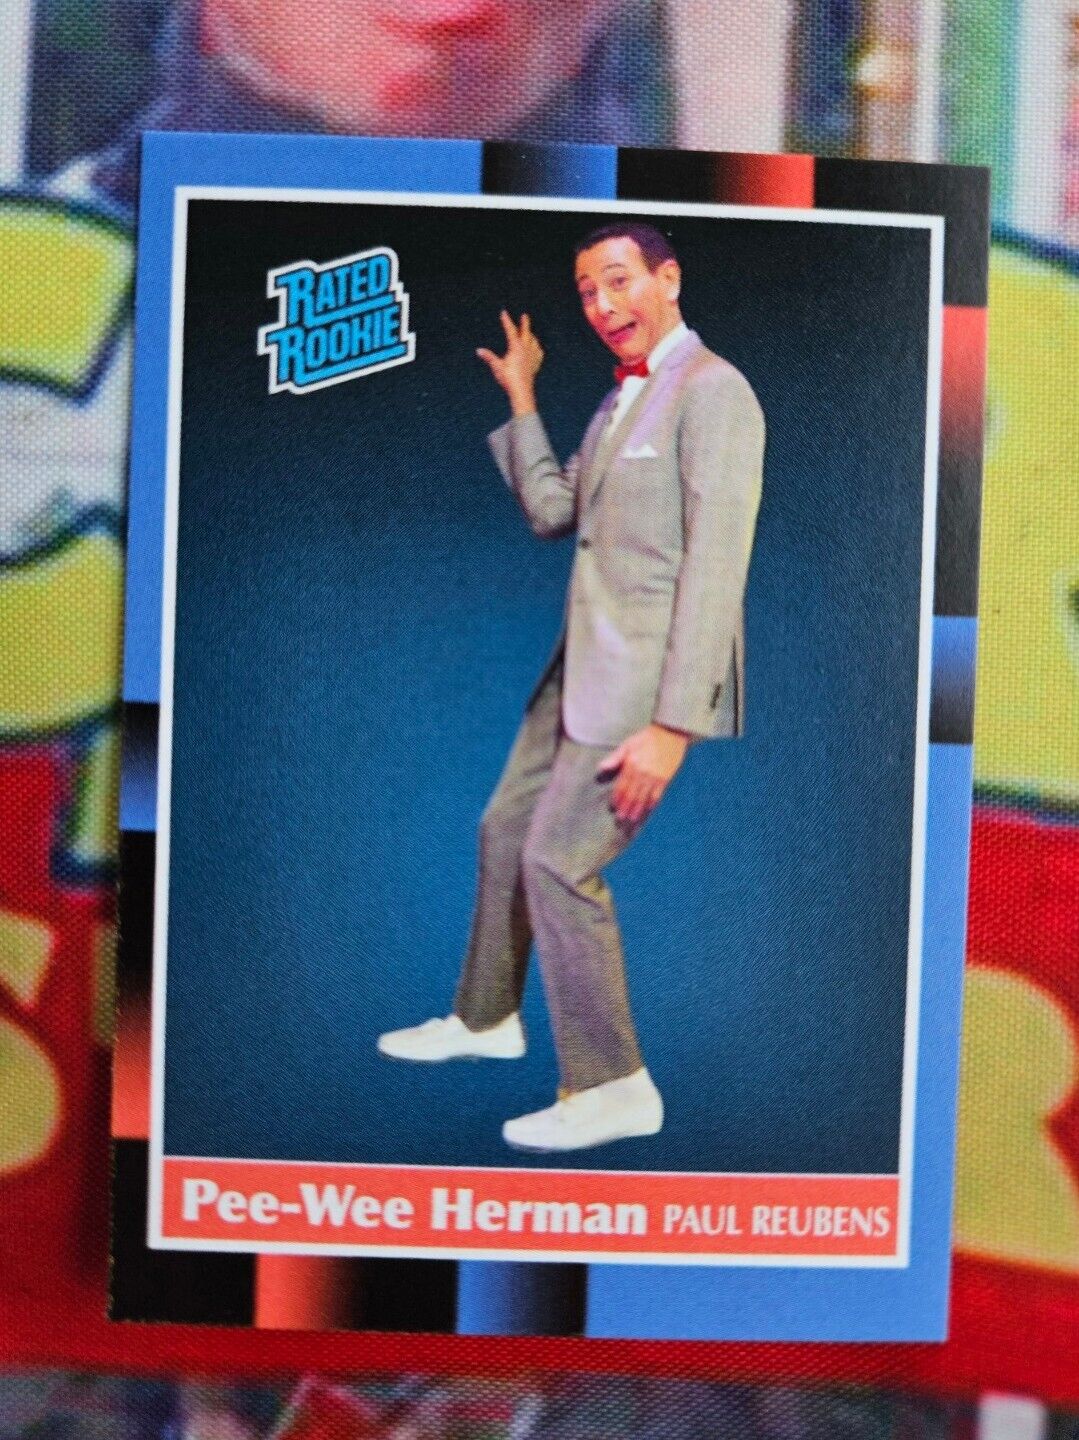 Pee-Wee Herman Paul Reubens custom ROOKIE Card 1988 style ACEO Big adventure 